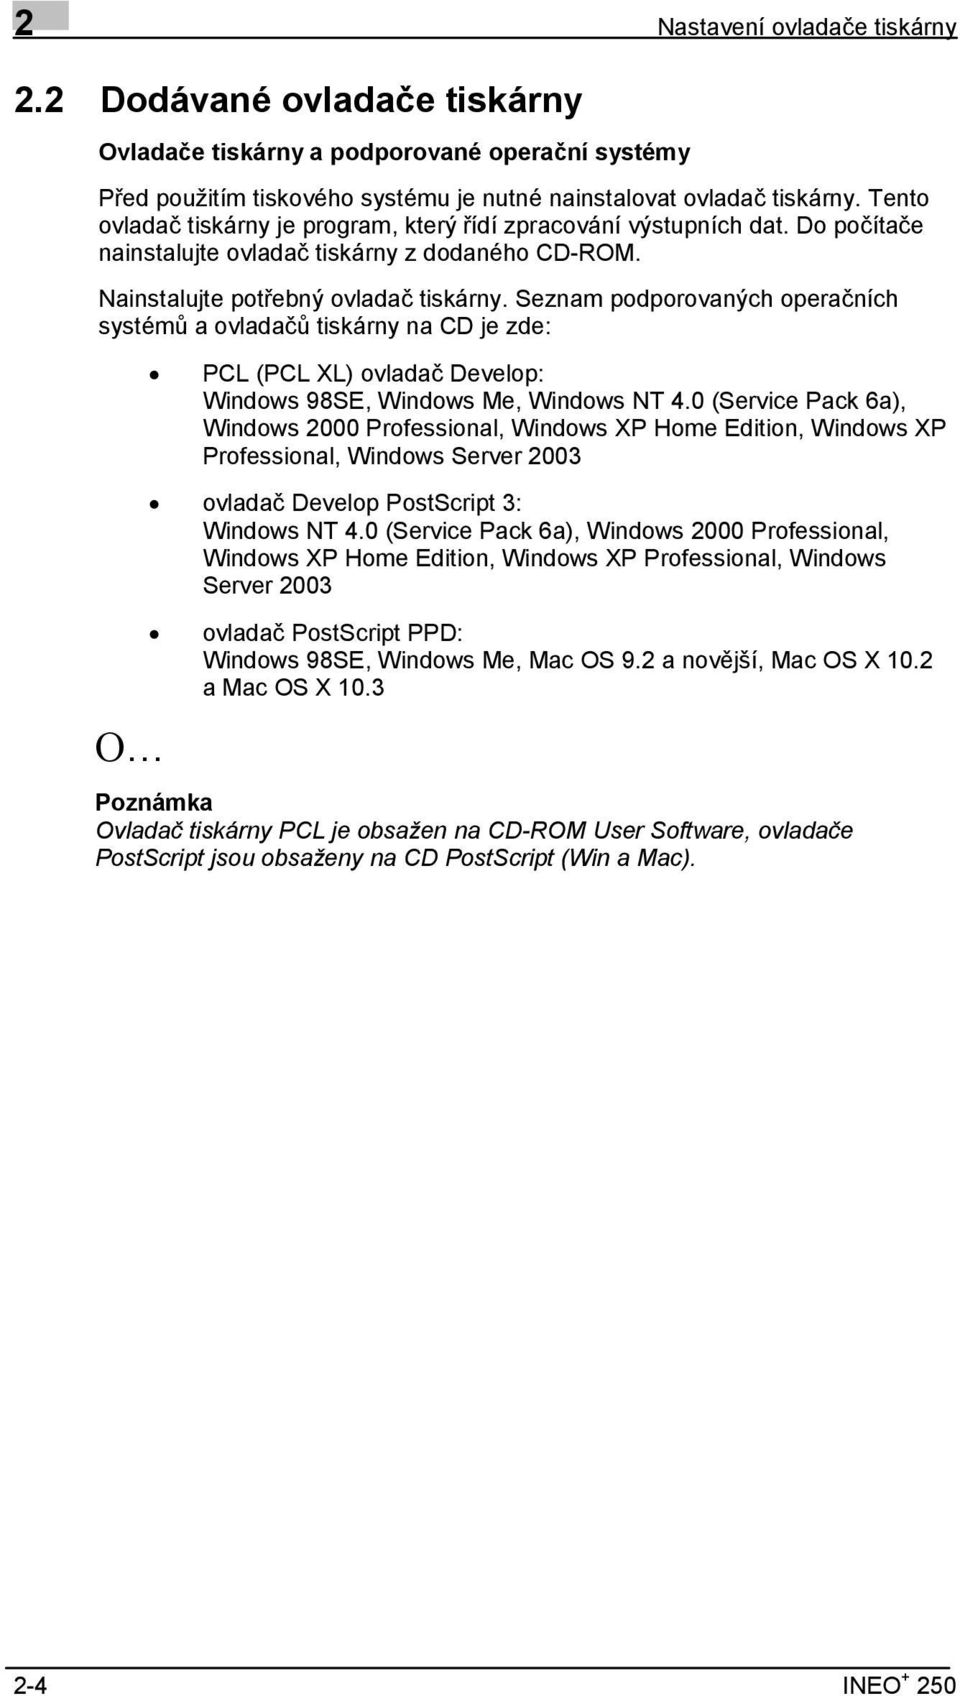 Seznam podporovaných operačních systémů a ovladačů tiskárny na CD je zde: Ο PCL (PCL XL) ovladač Develop: Windows 98SE, Windows Me, Windows NT 4.